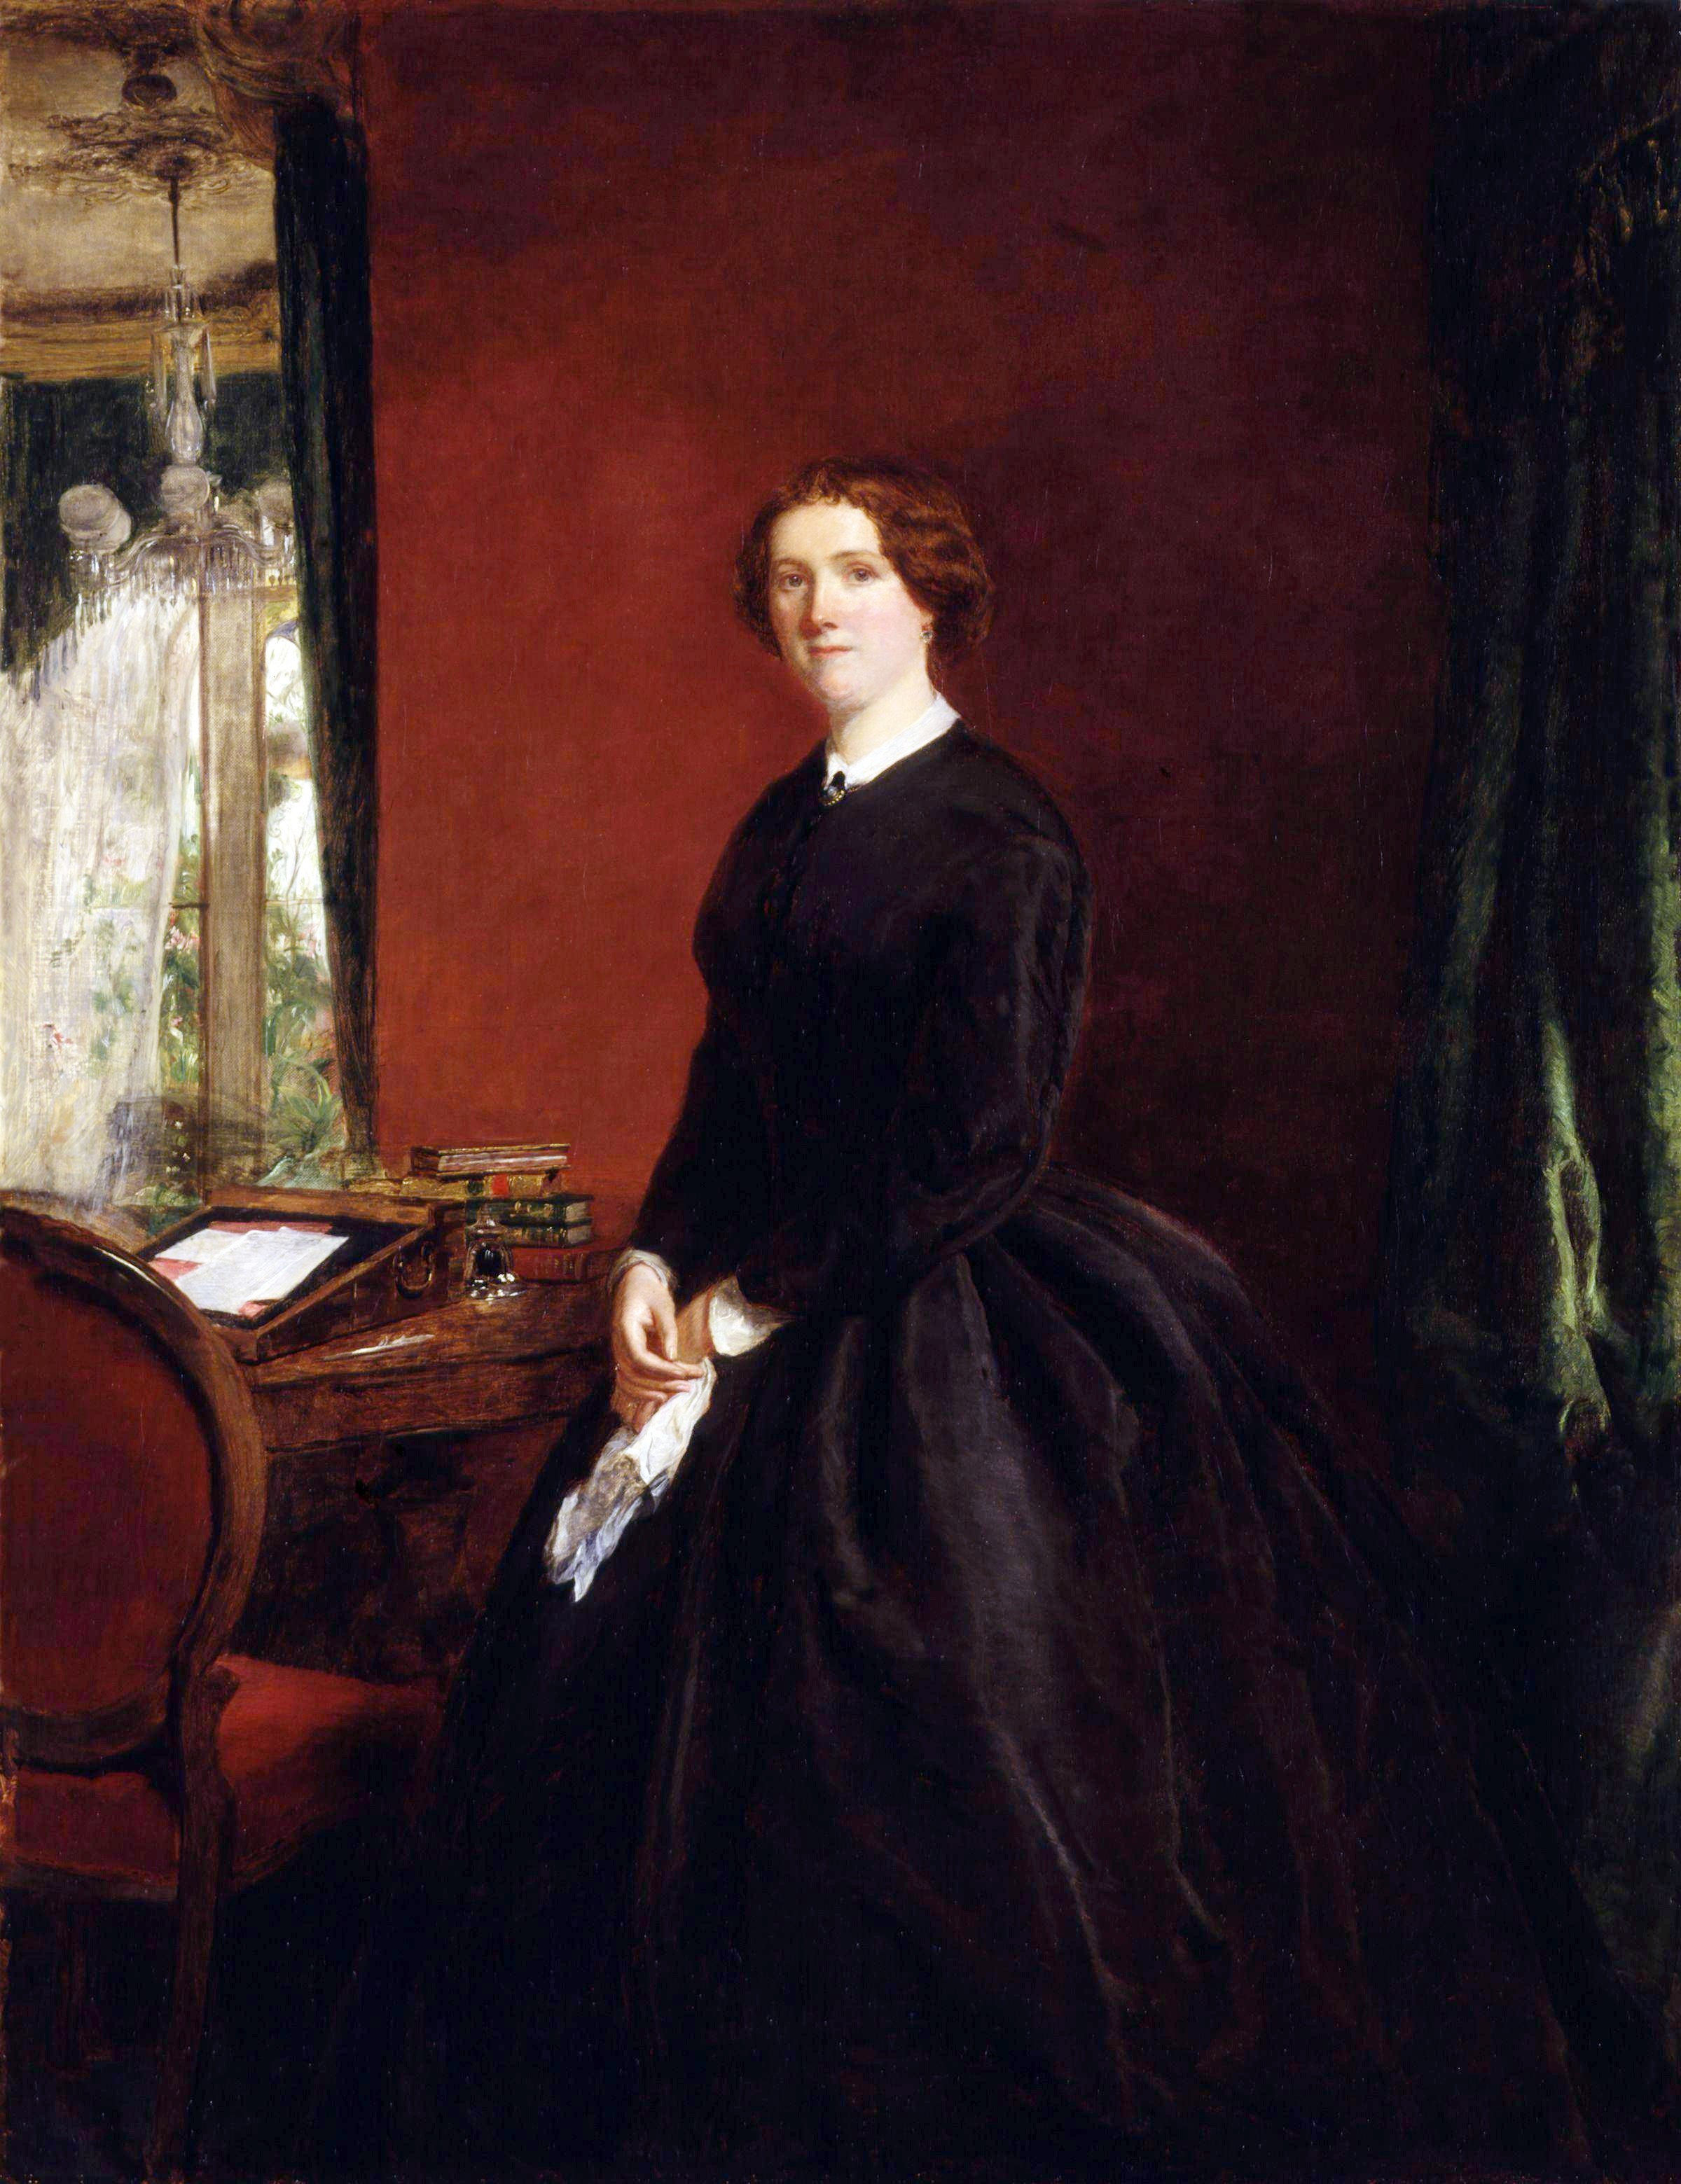 Ritratto di Mary Elizabeth Braddon, 1865, conservato alla National Portrait Gallery di Londra.